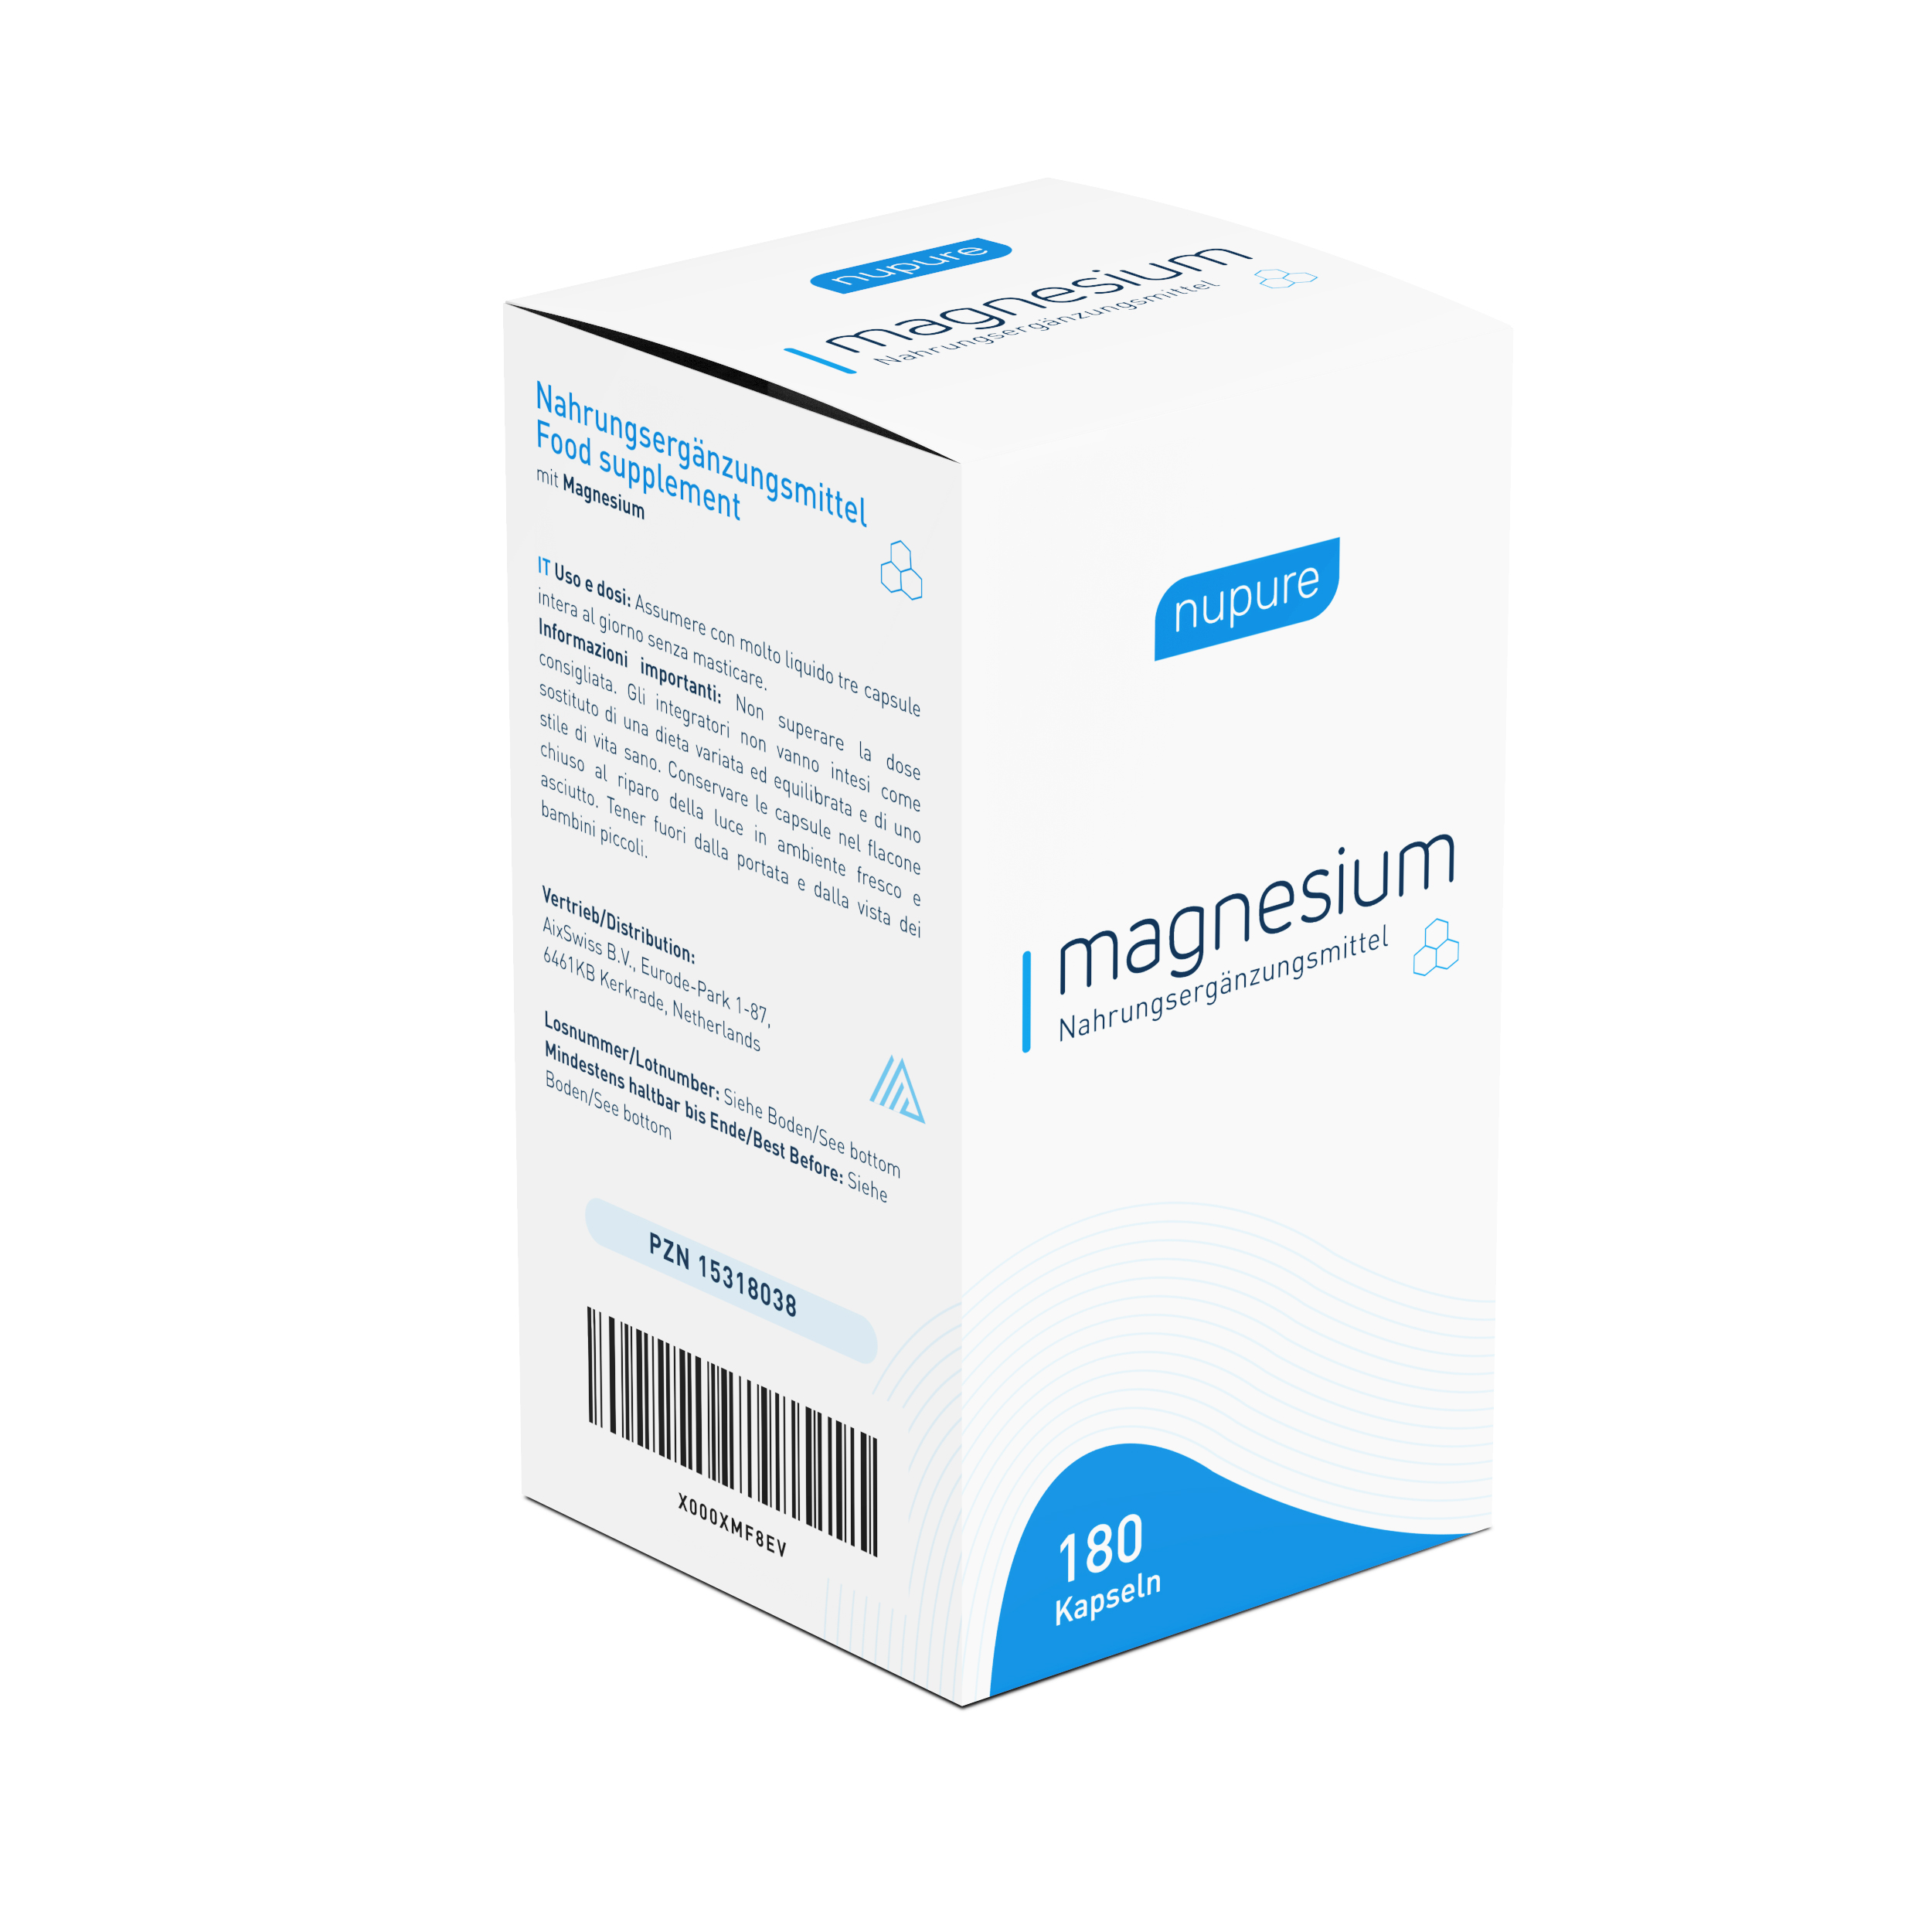 Nupure magnesium mit Magnesiumcitrat Kapseln